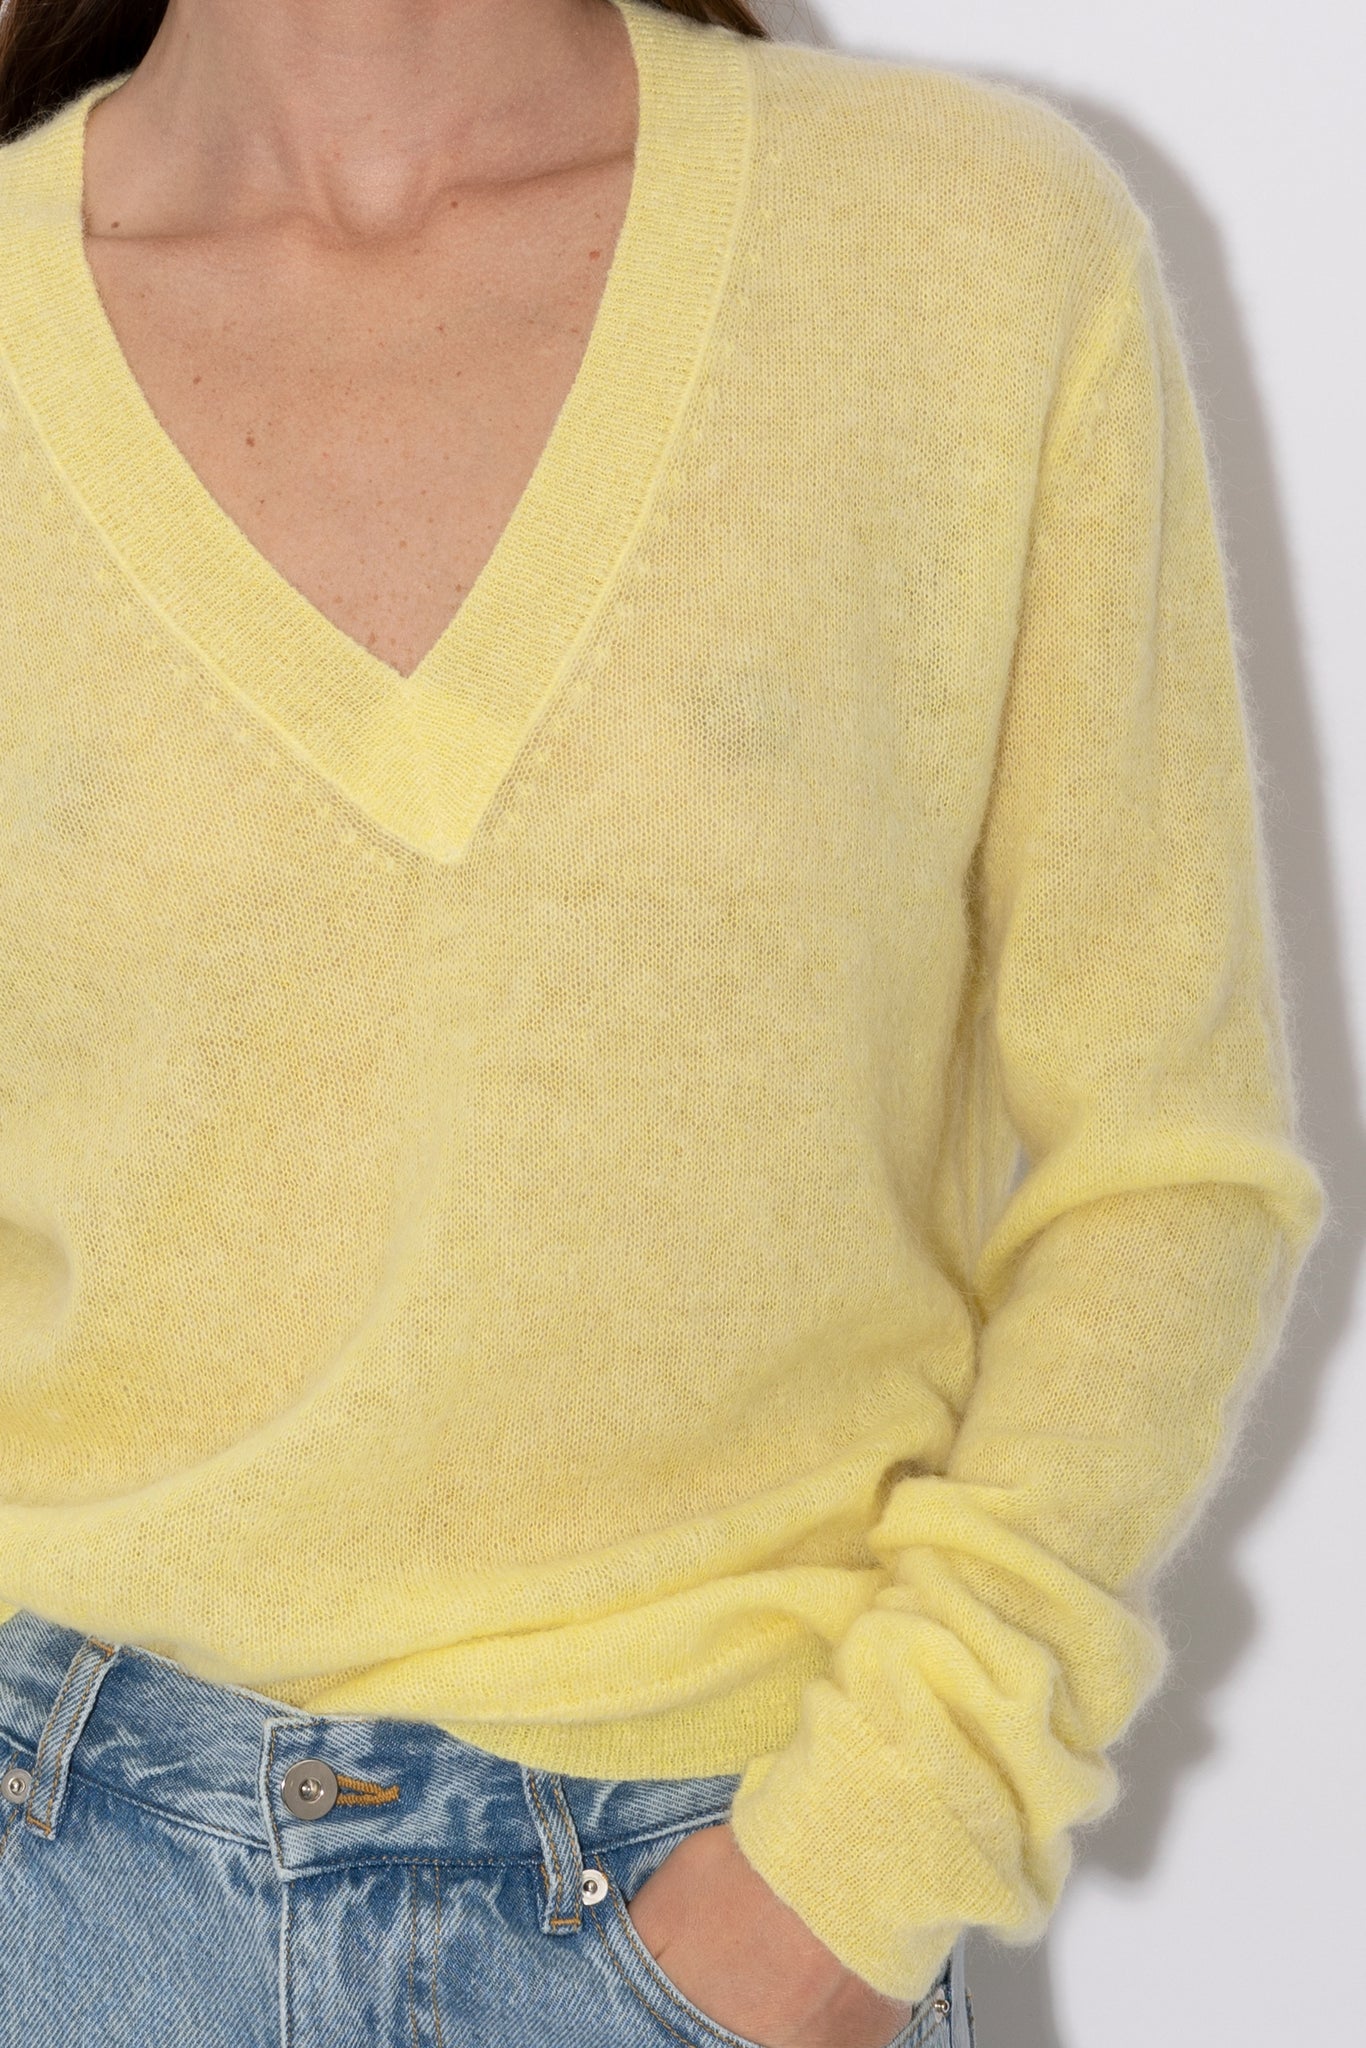 KAREV pullover | ICED LEMON